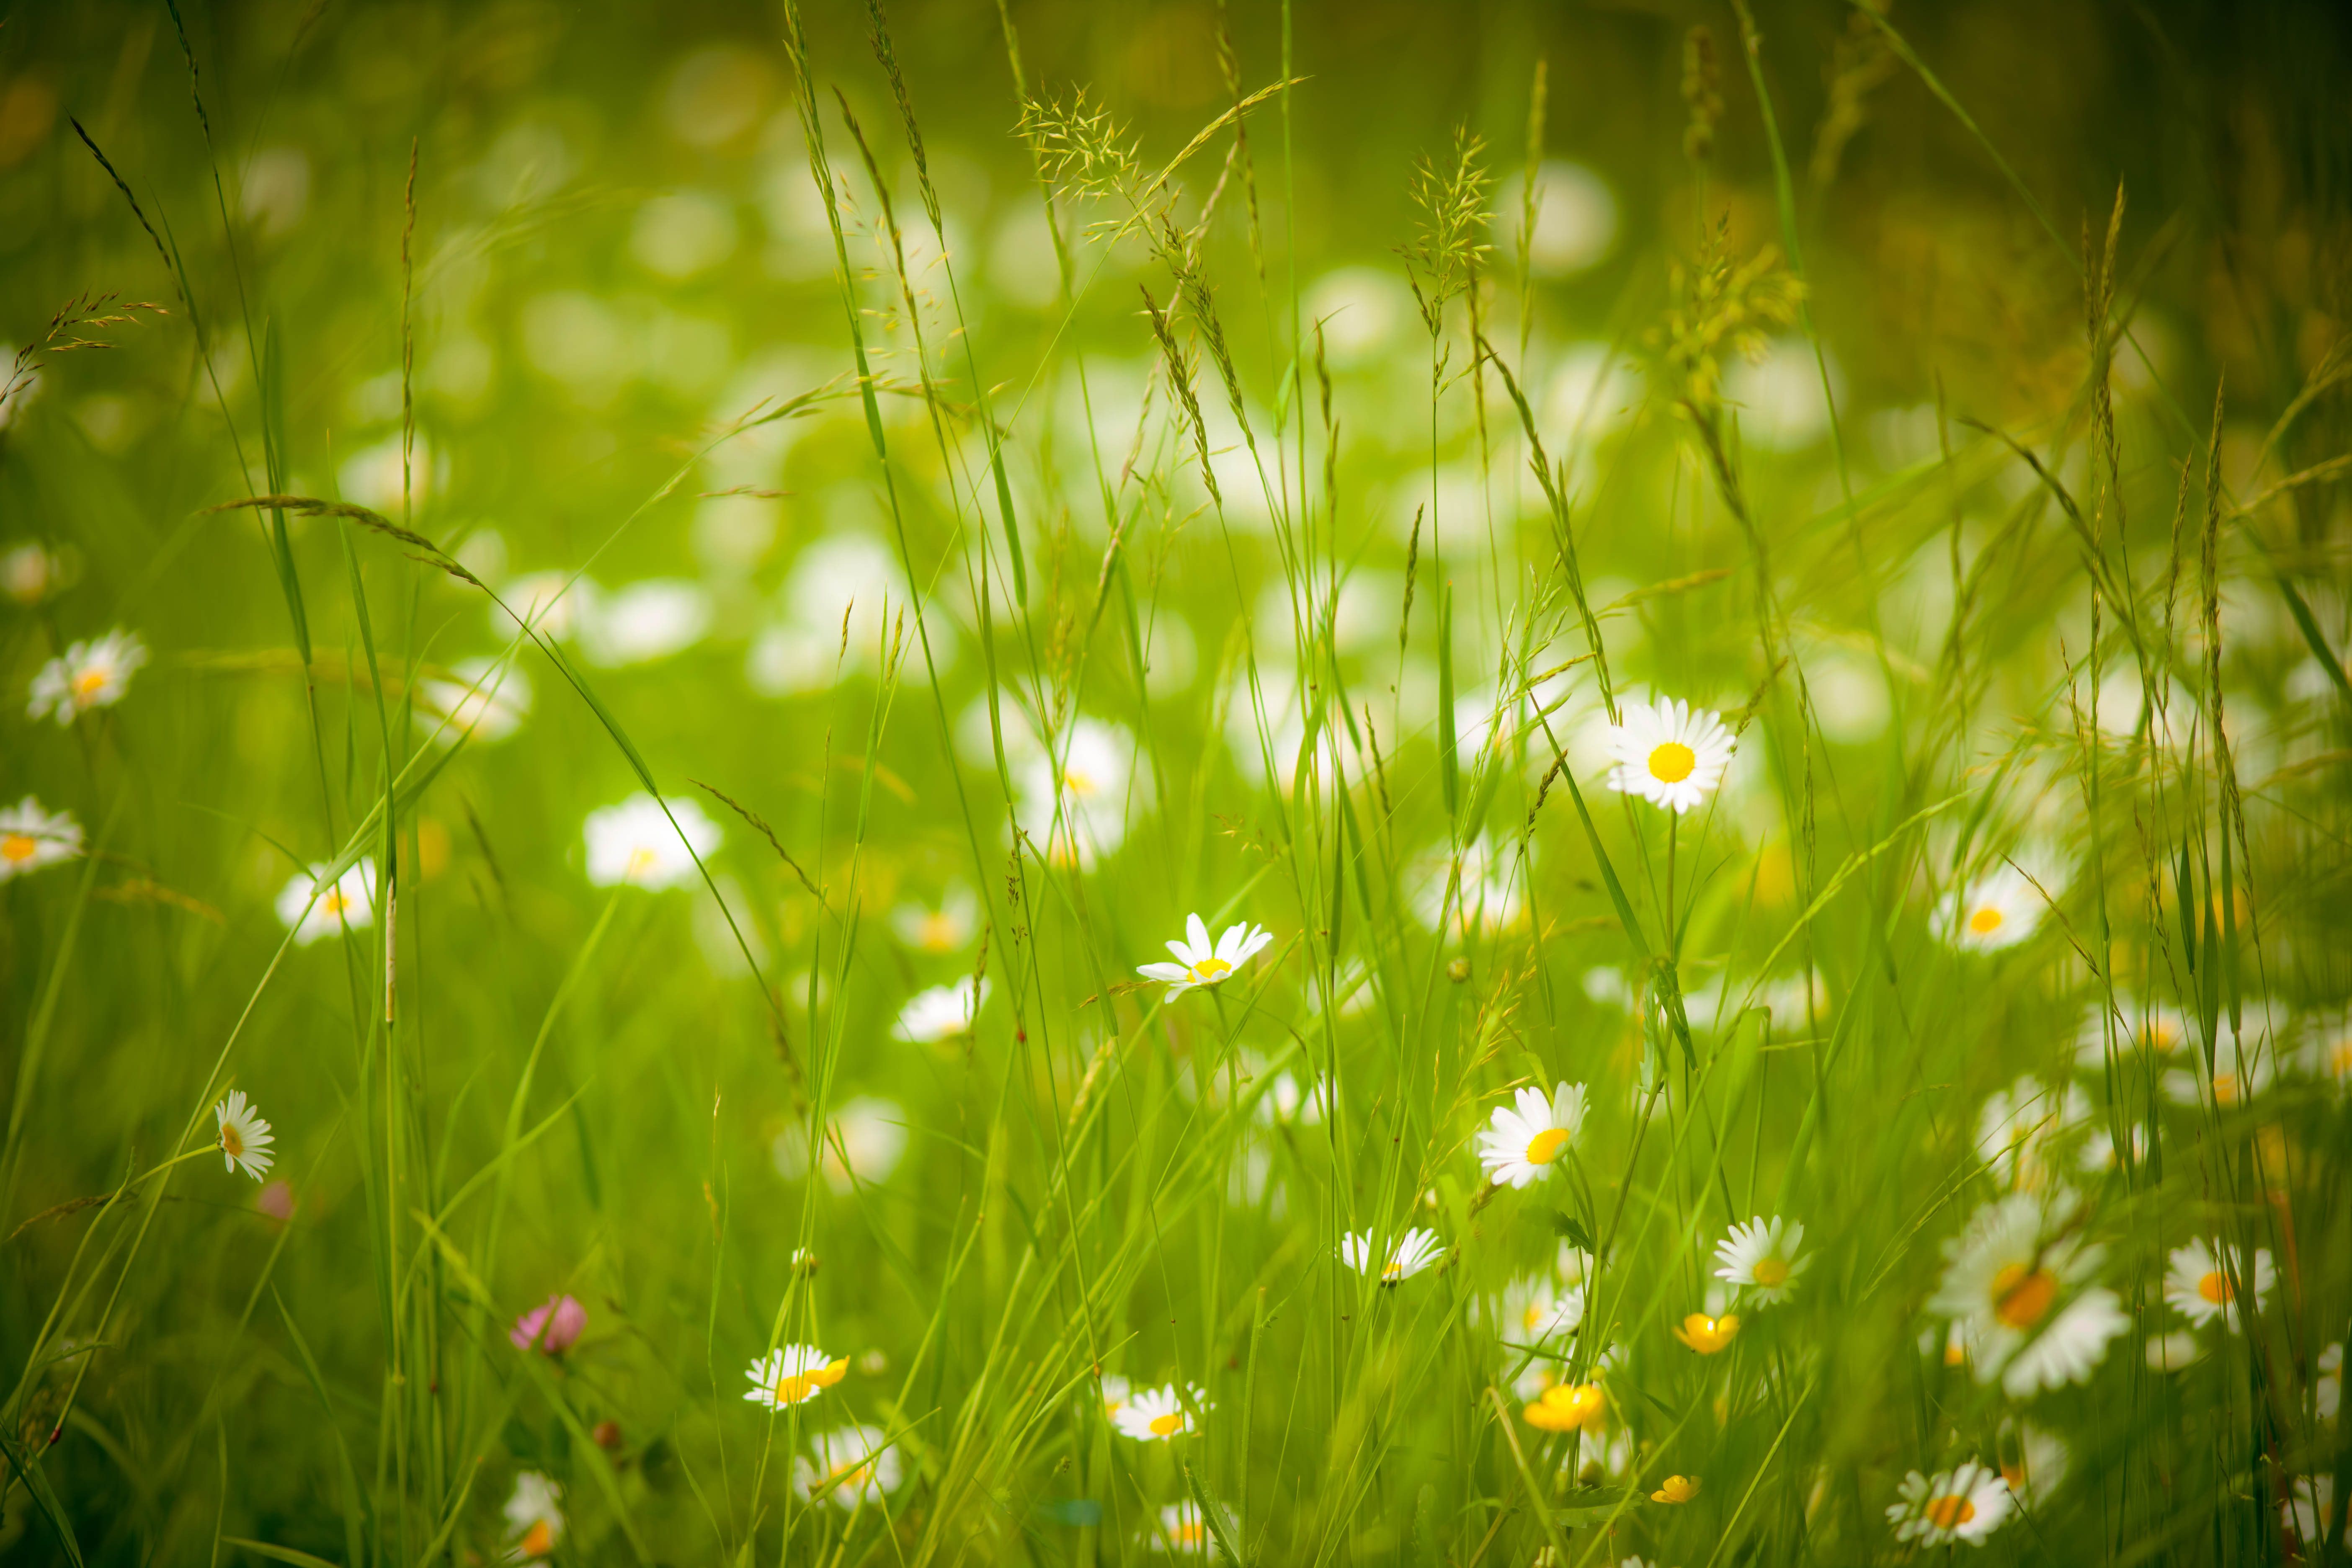  Blumenwiese Hintergrundbild 5616x3744. Fotos Natur Sommer Kamillen Grünland Gras 5616x3744